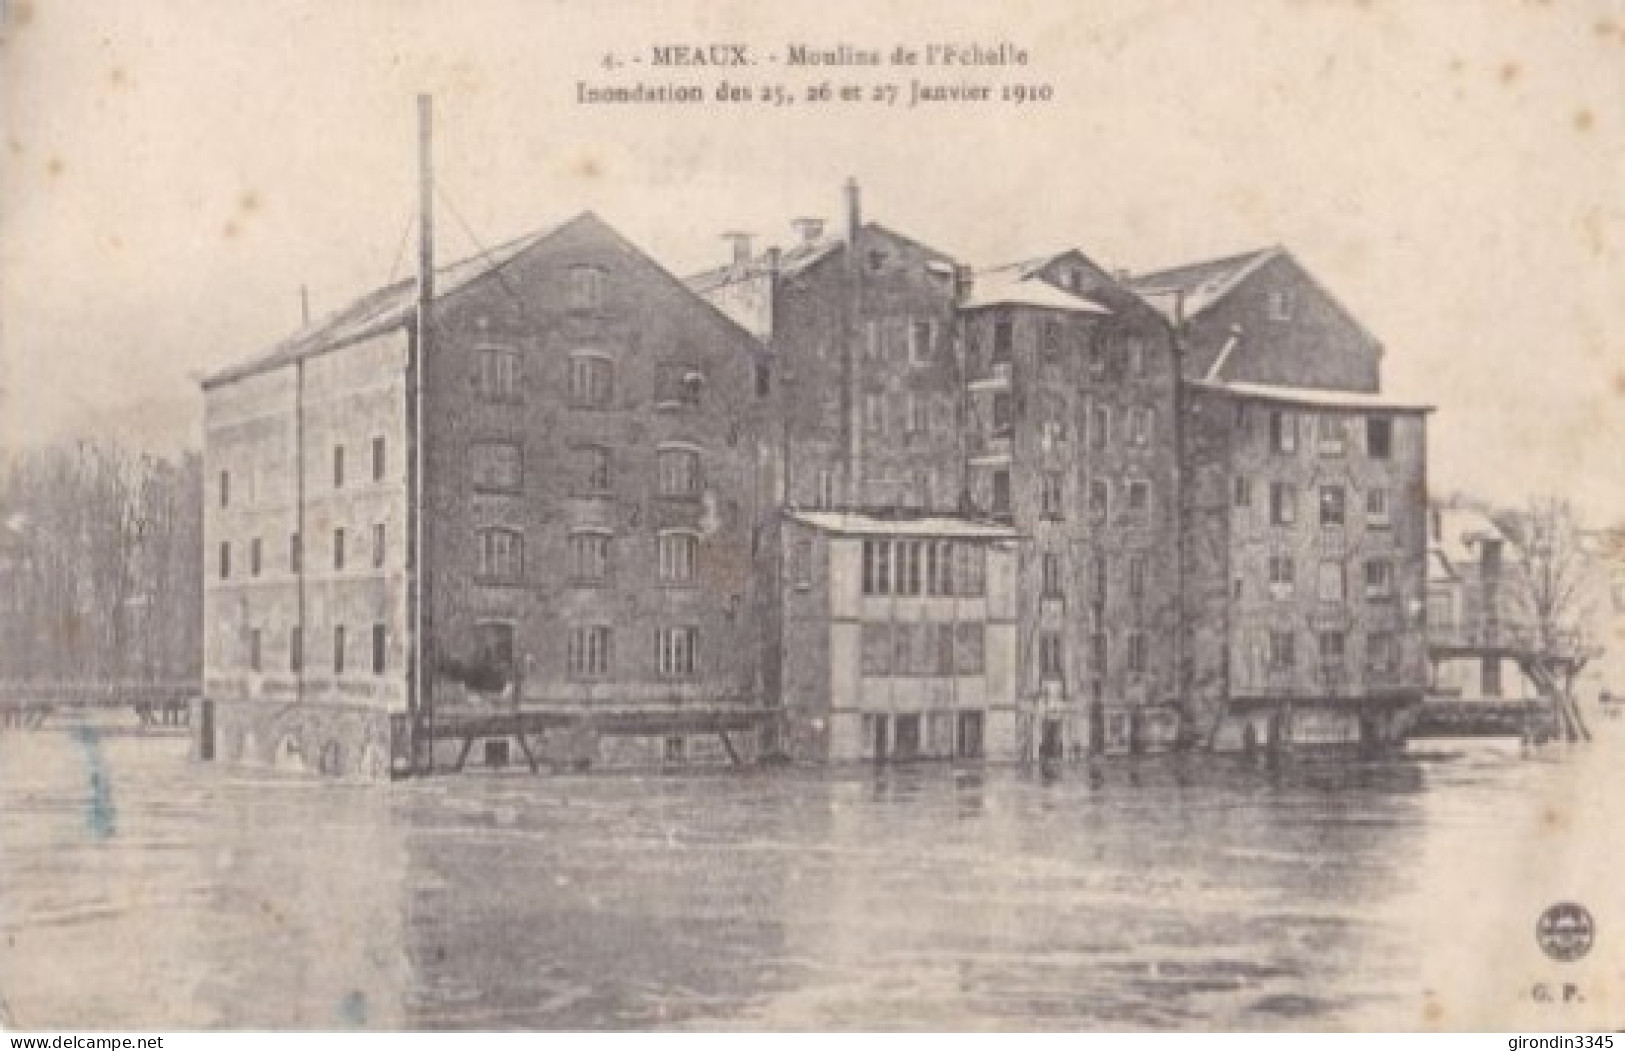 MEAUX Inondations 25-26 Et 27 Janvier 1910 Moulins De L'ECHELLE - Meaux